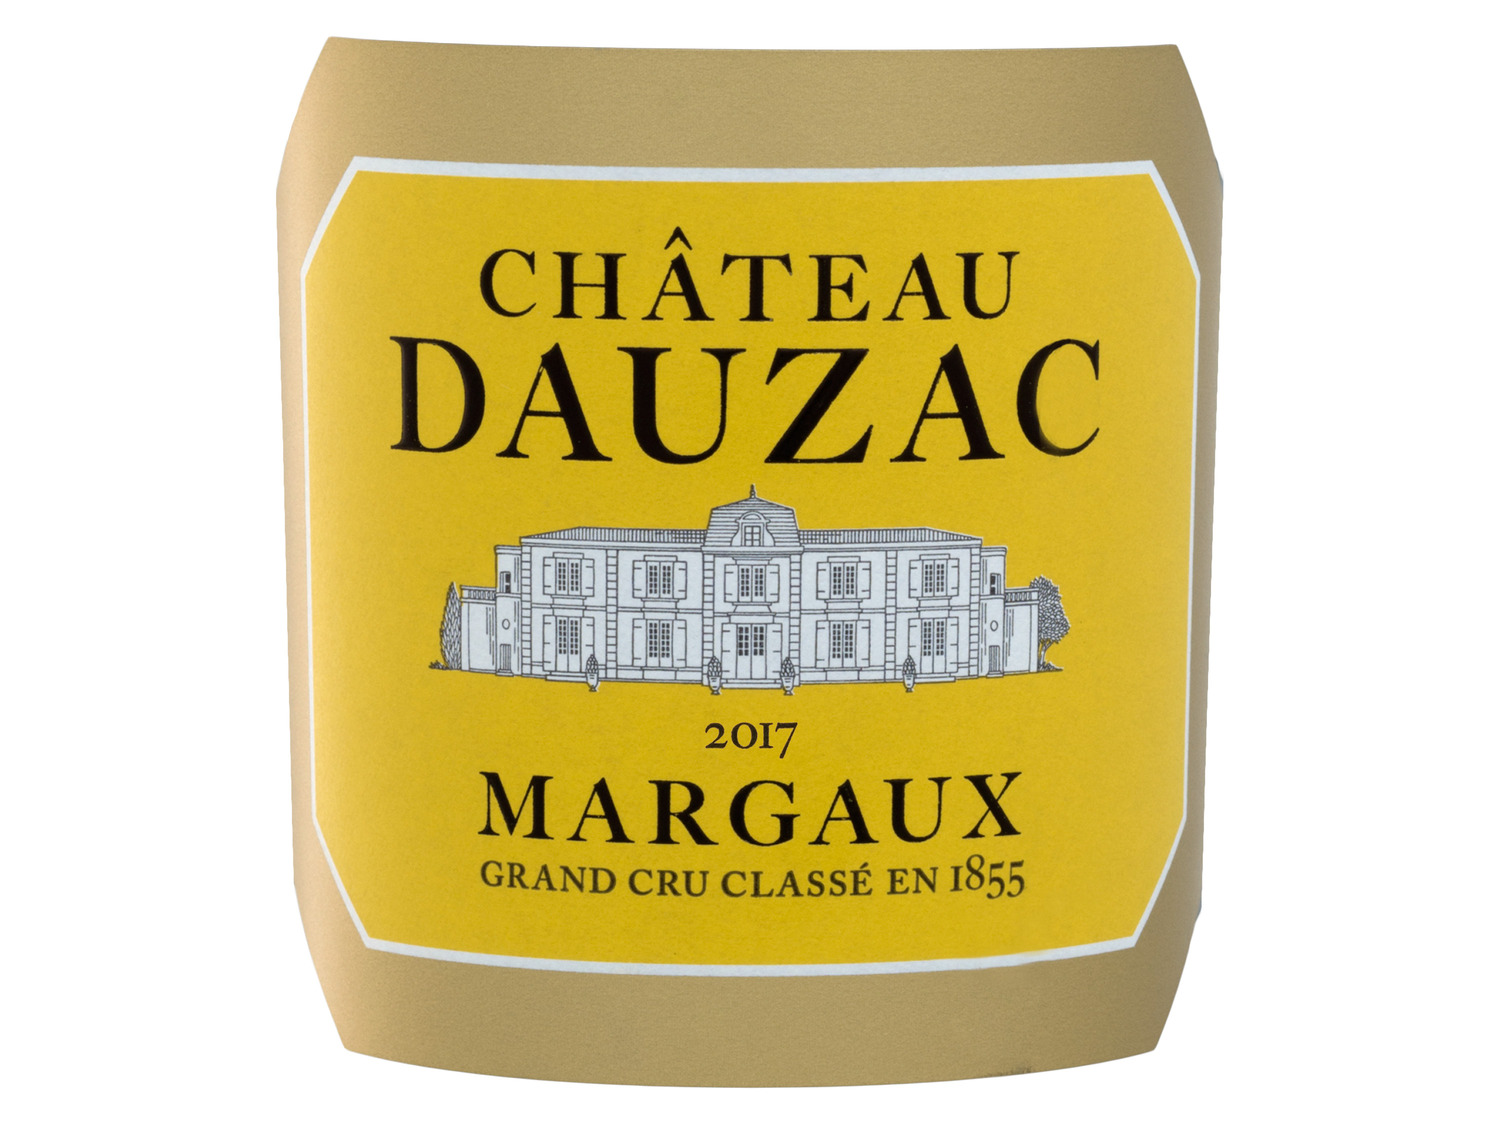 Château Dauzac Margaux 5éme Grand trocken Cru Classé AOC Rotwein 2017